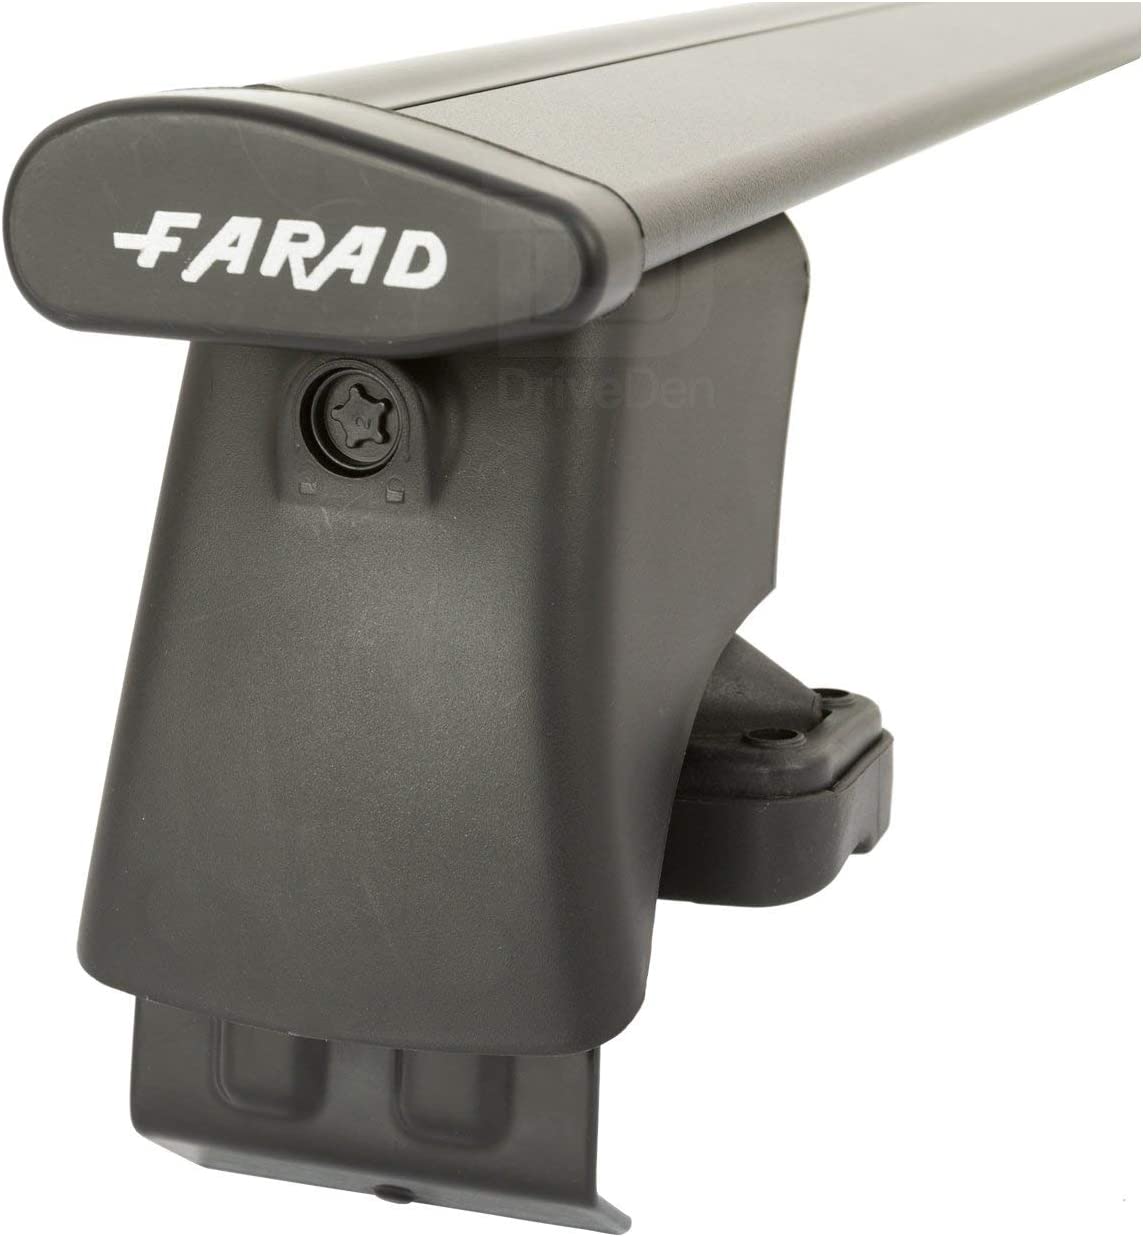 FARAD-Kit H2 per barre portatutto - Seat Exeo 2009-2013 (senza corrimano)